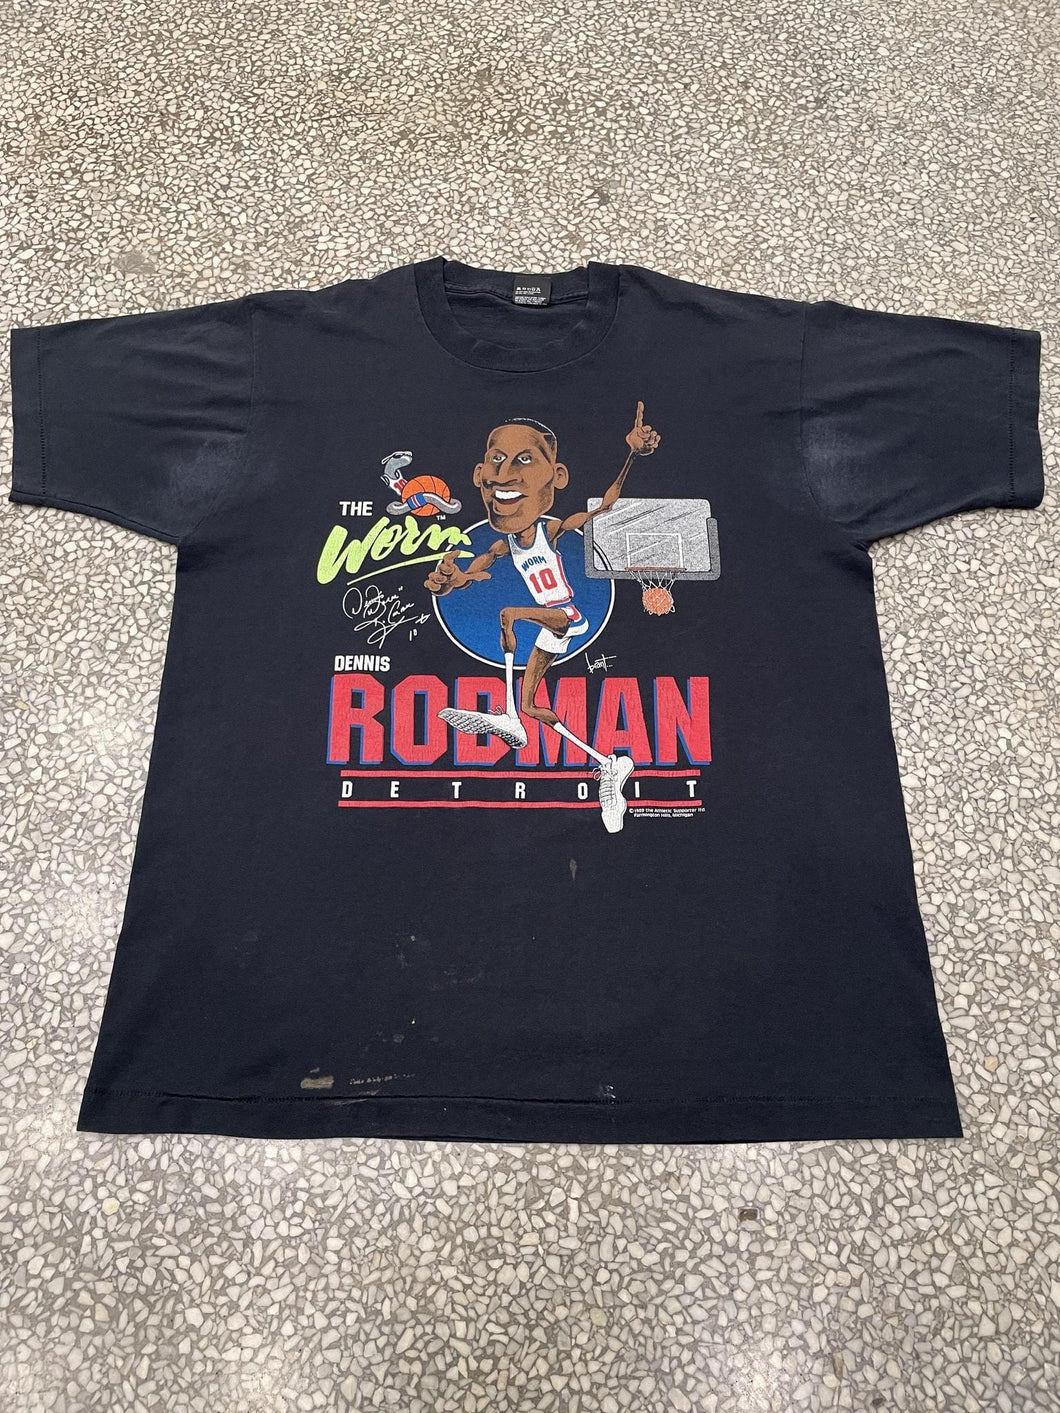 Detroit Pistons Vintage 1989 Dennis Rodman The Worm Black ABC Vintage 